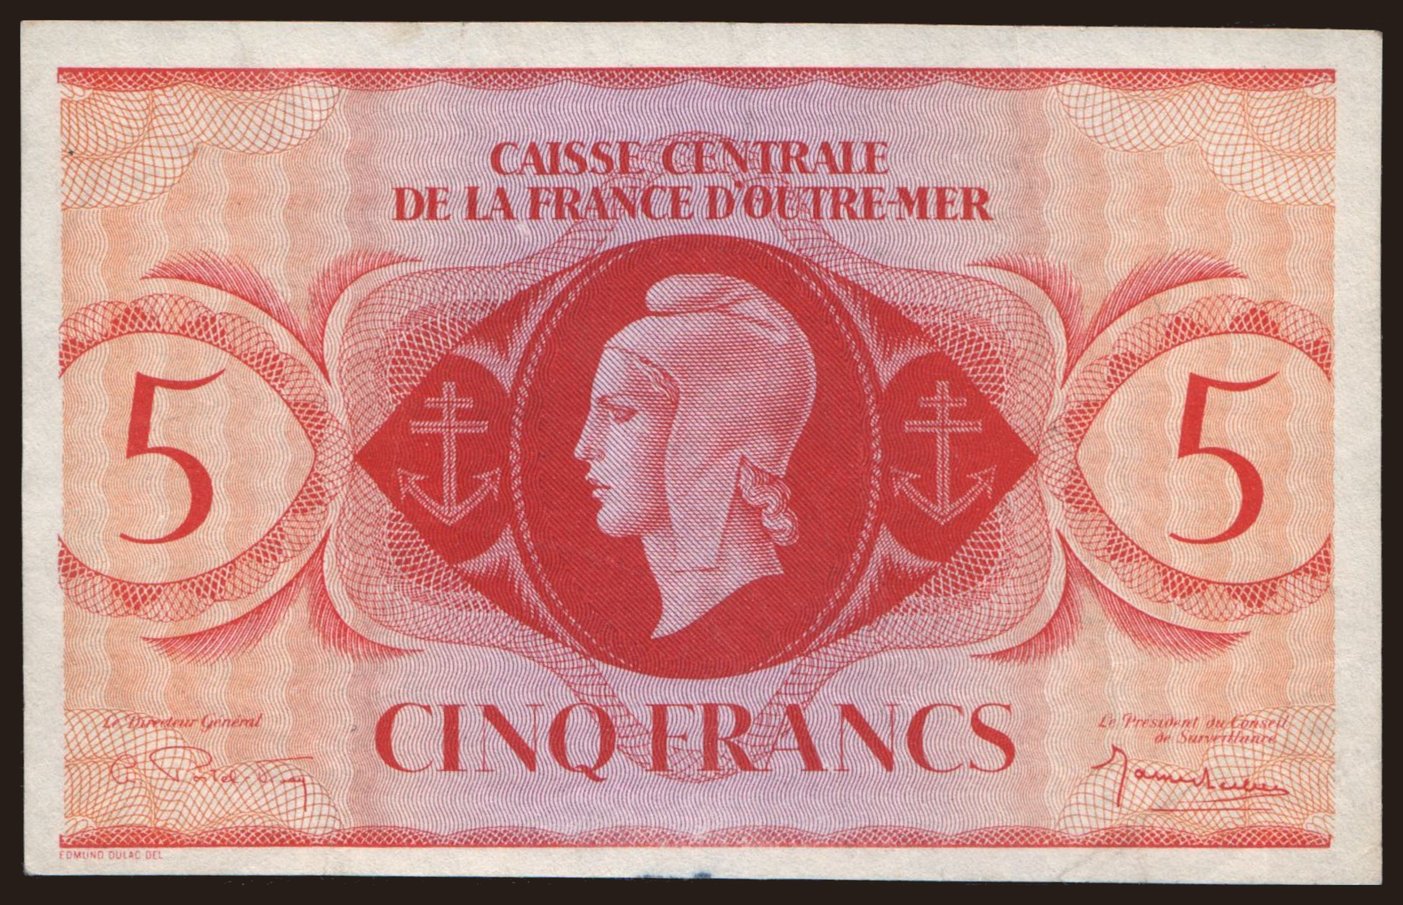 5 francs, 1944